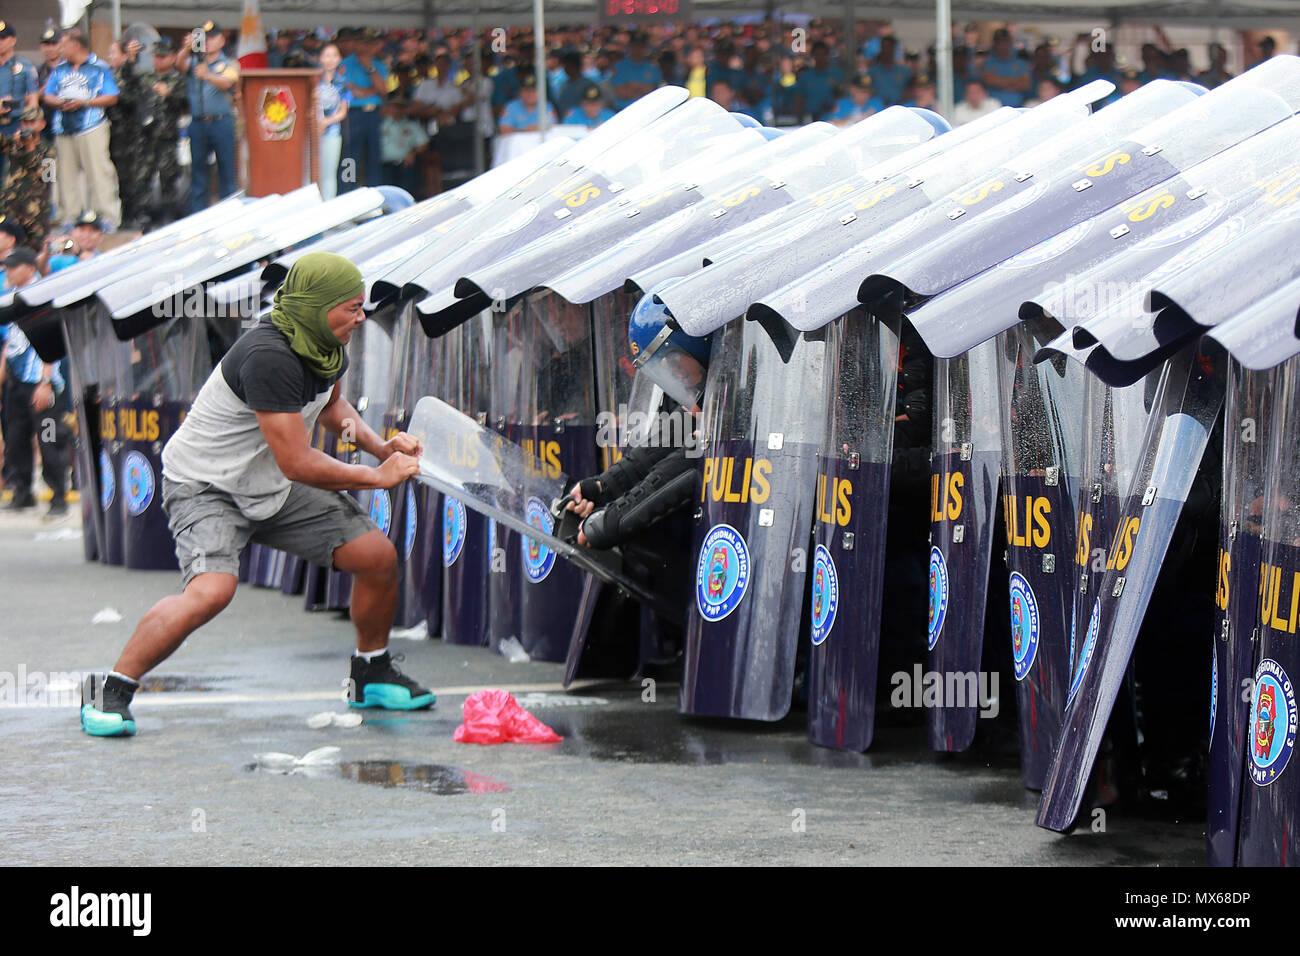 Manila, Philippinen. 3. Juni 2018. Eine angenommene Aktivist versucht, die Bildung von Polizisten während der jährlichen Philippinischen Nationalpolizei Unruhen Management (PNP-CDM) Wettbewerb in Manila, Philippinen, 3. Juni 2018 zu brechen. Credit: rouelle Umali/Xinhua/Alamy leben Nachrichten Stockfoto